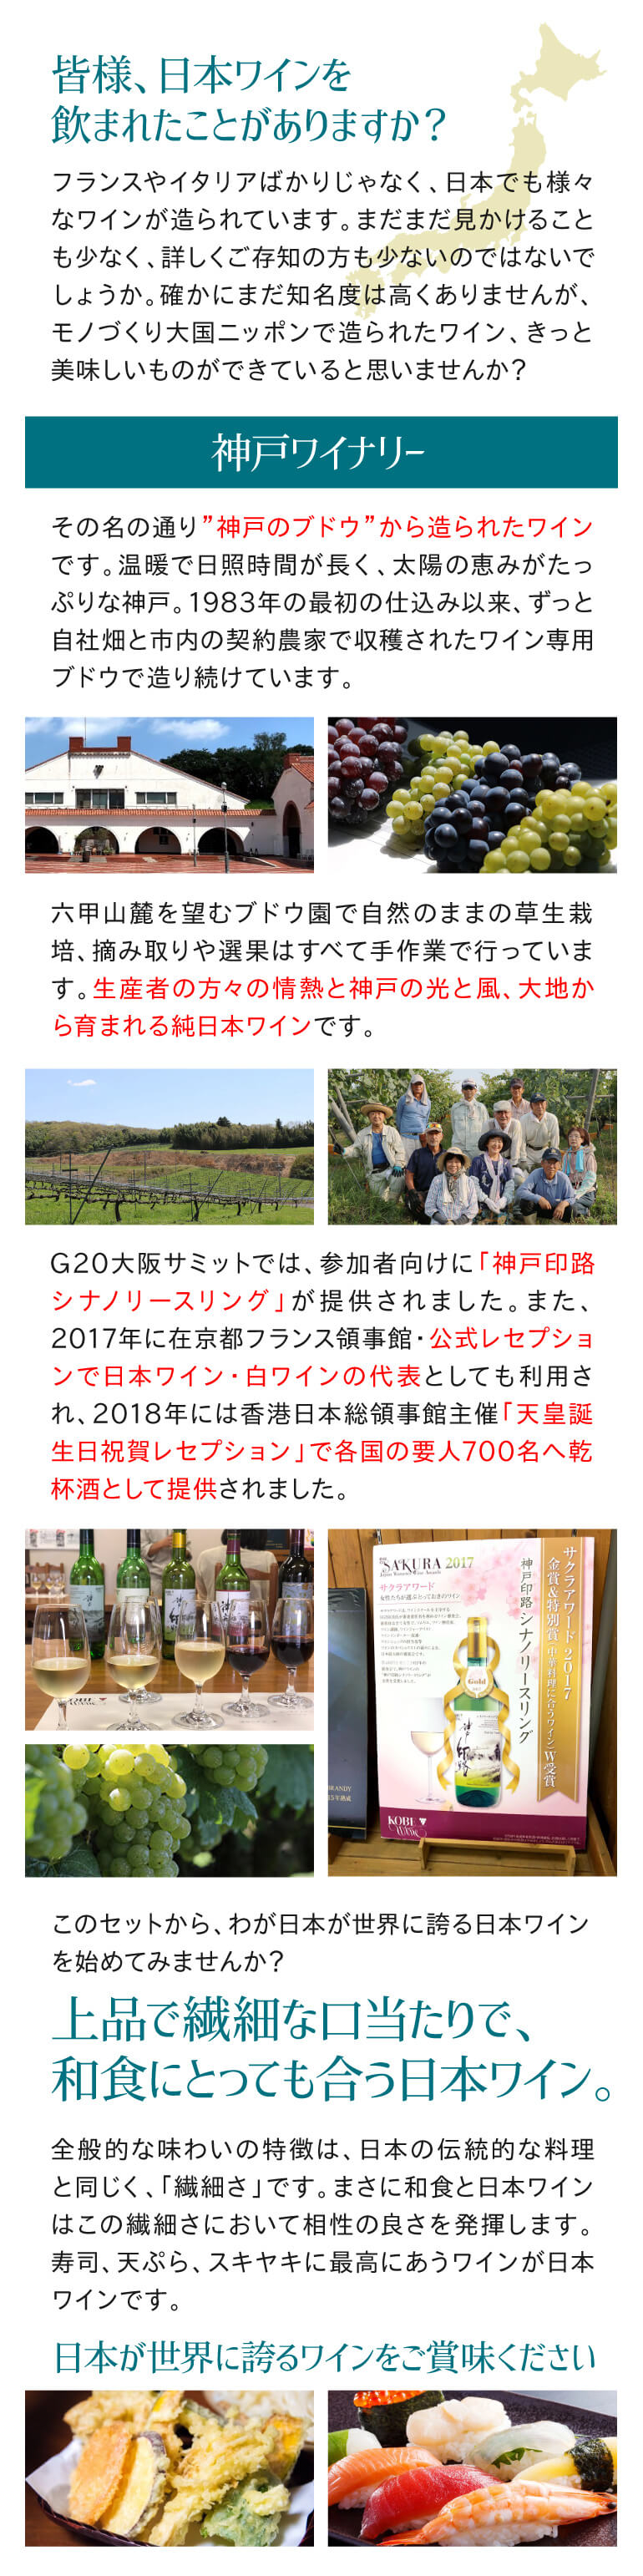 神戸ワイン 印路 シナノ リースリング 2019